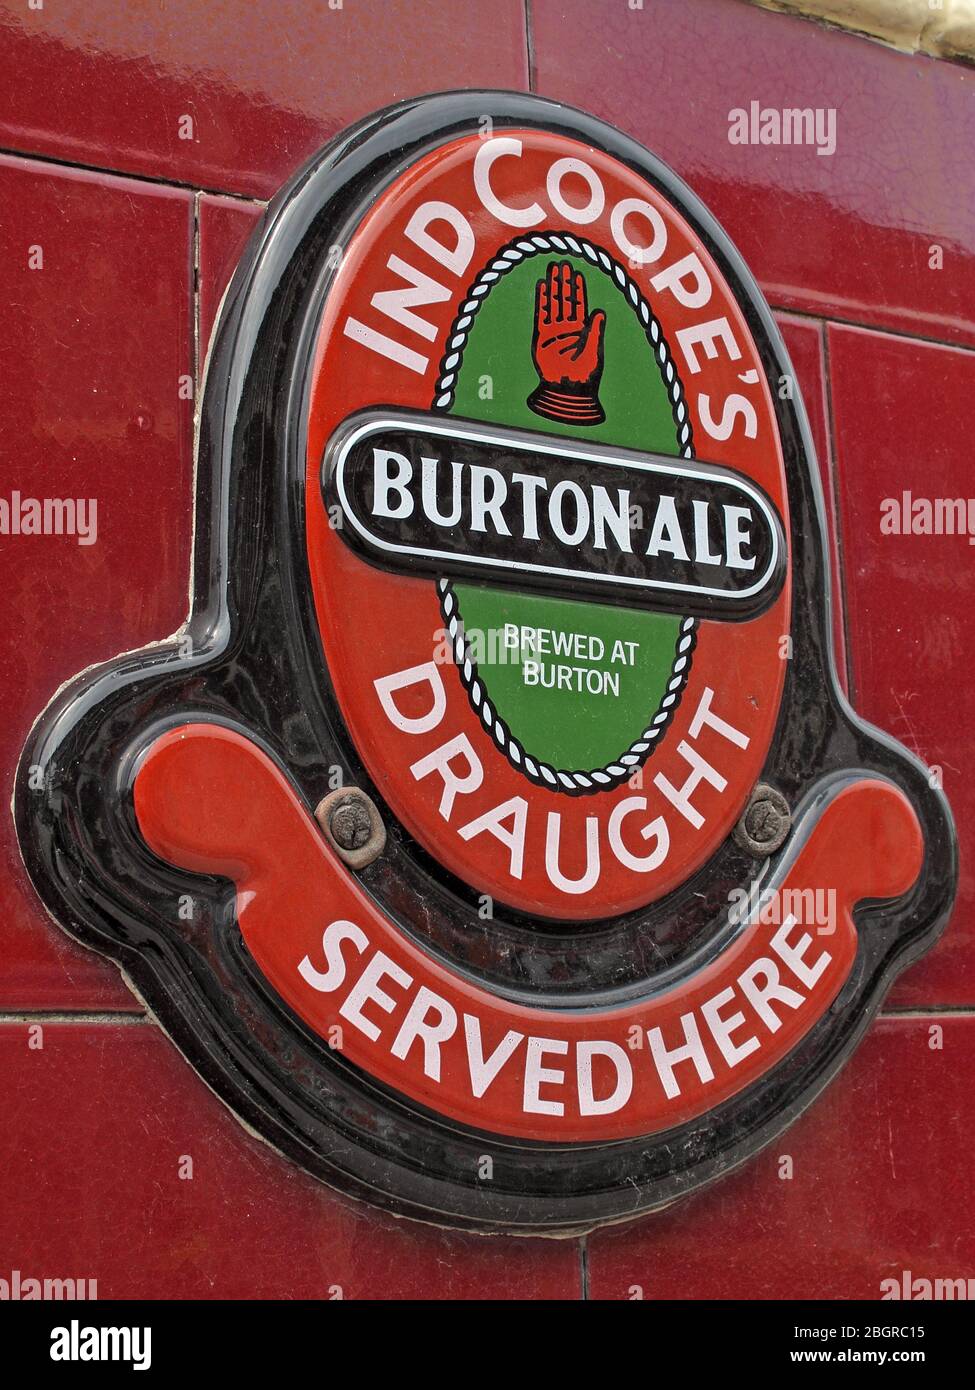 Historisches gekacheltes Schild, Ind Coopes, Burton Ale, Brewed at Burton, Draft, serviert hier, Pub-Schild, England, Großbritannien Stockfoto